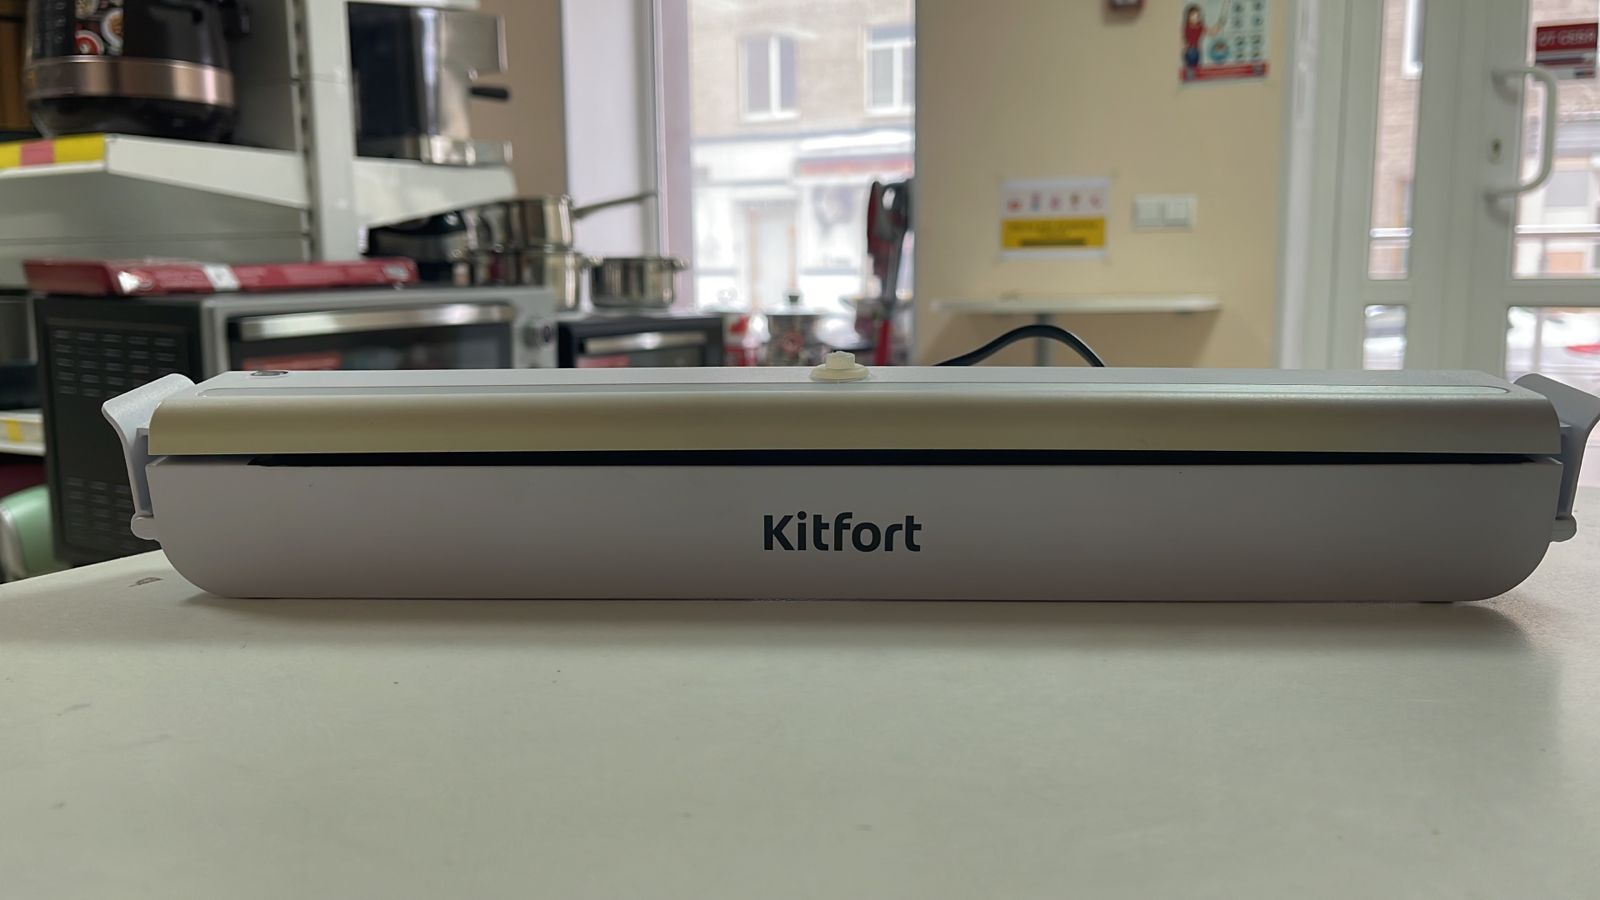  KitFort KT-1505-2 ()